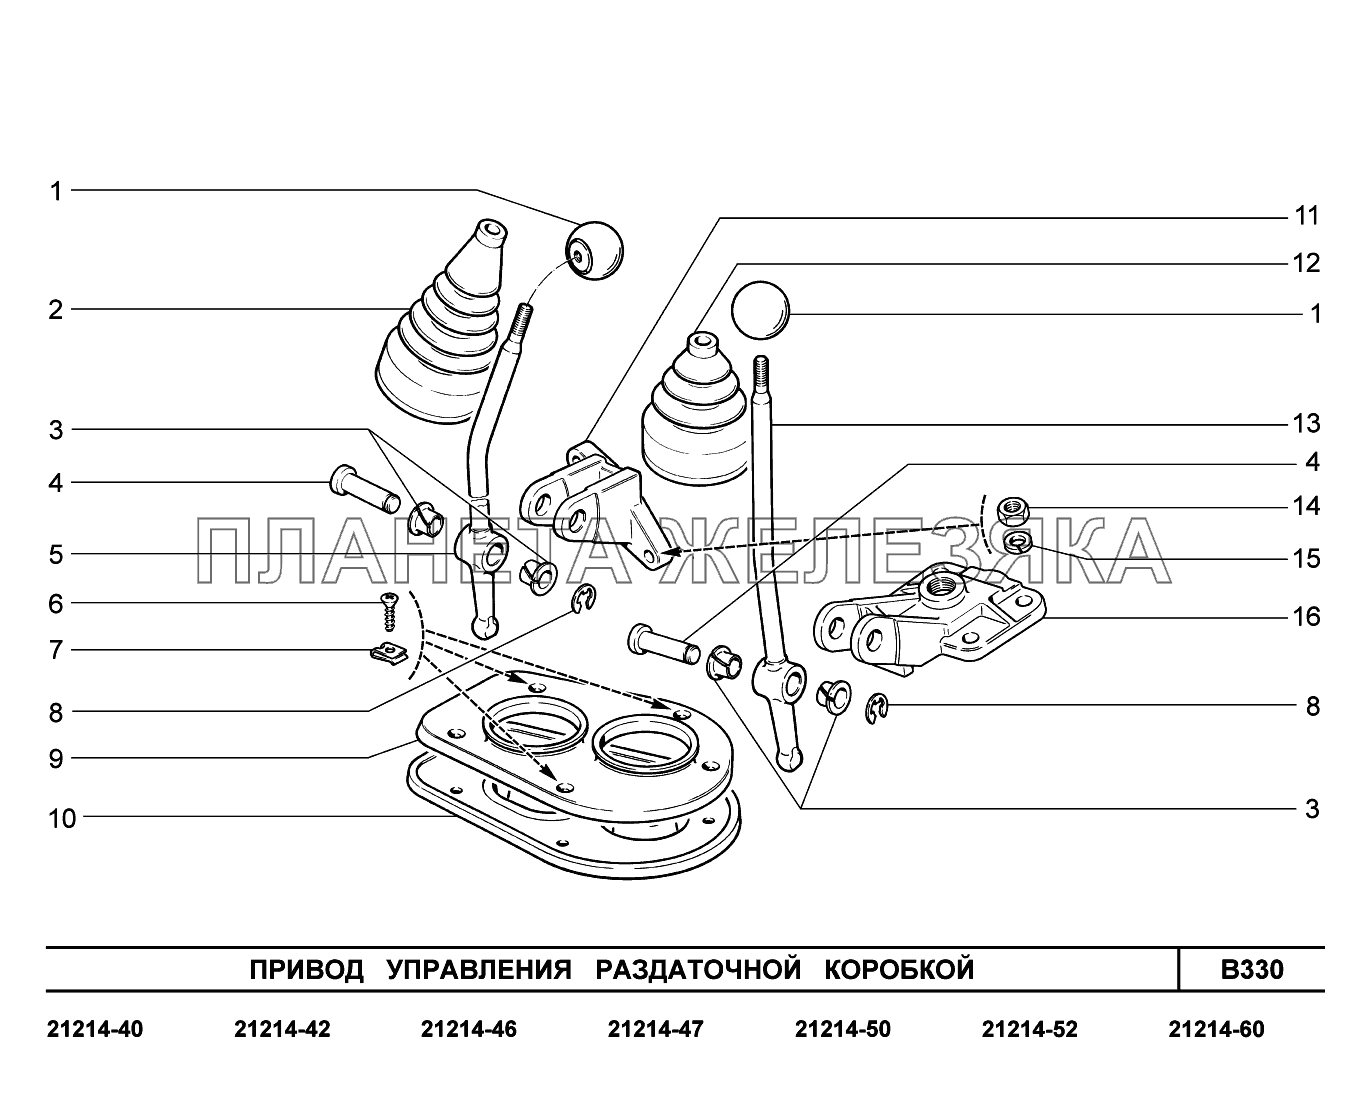 B330. Привод управления раздаточной коробкой Lada 4x4 Urban